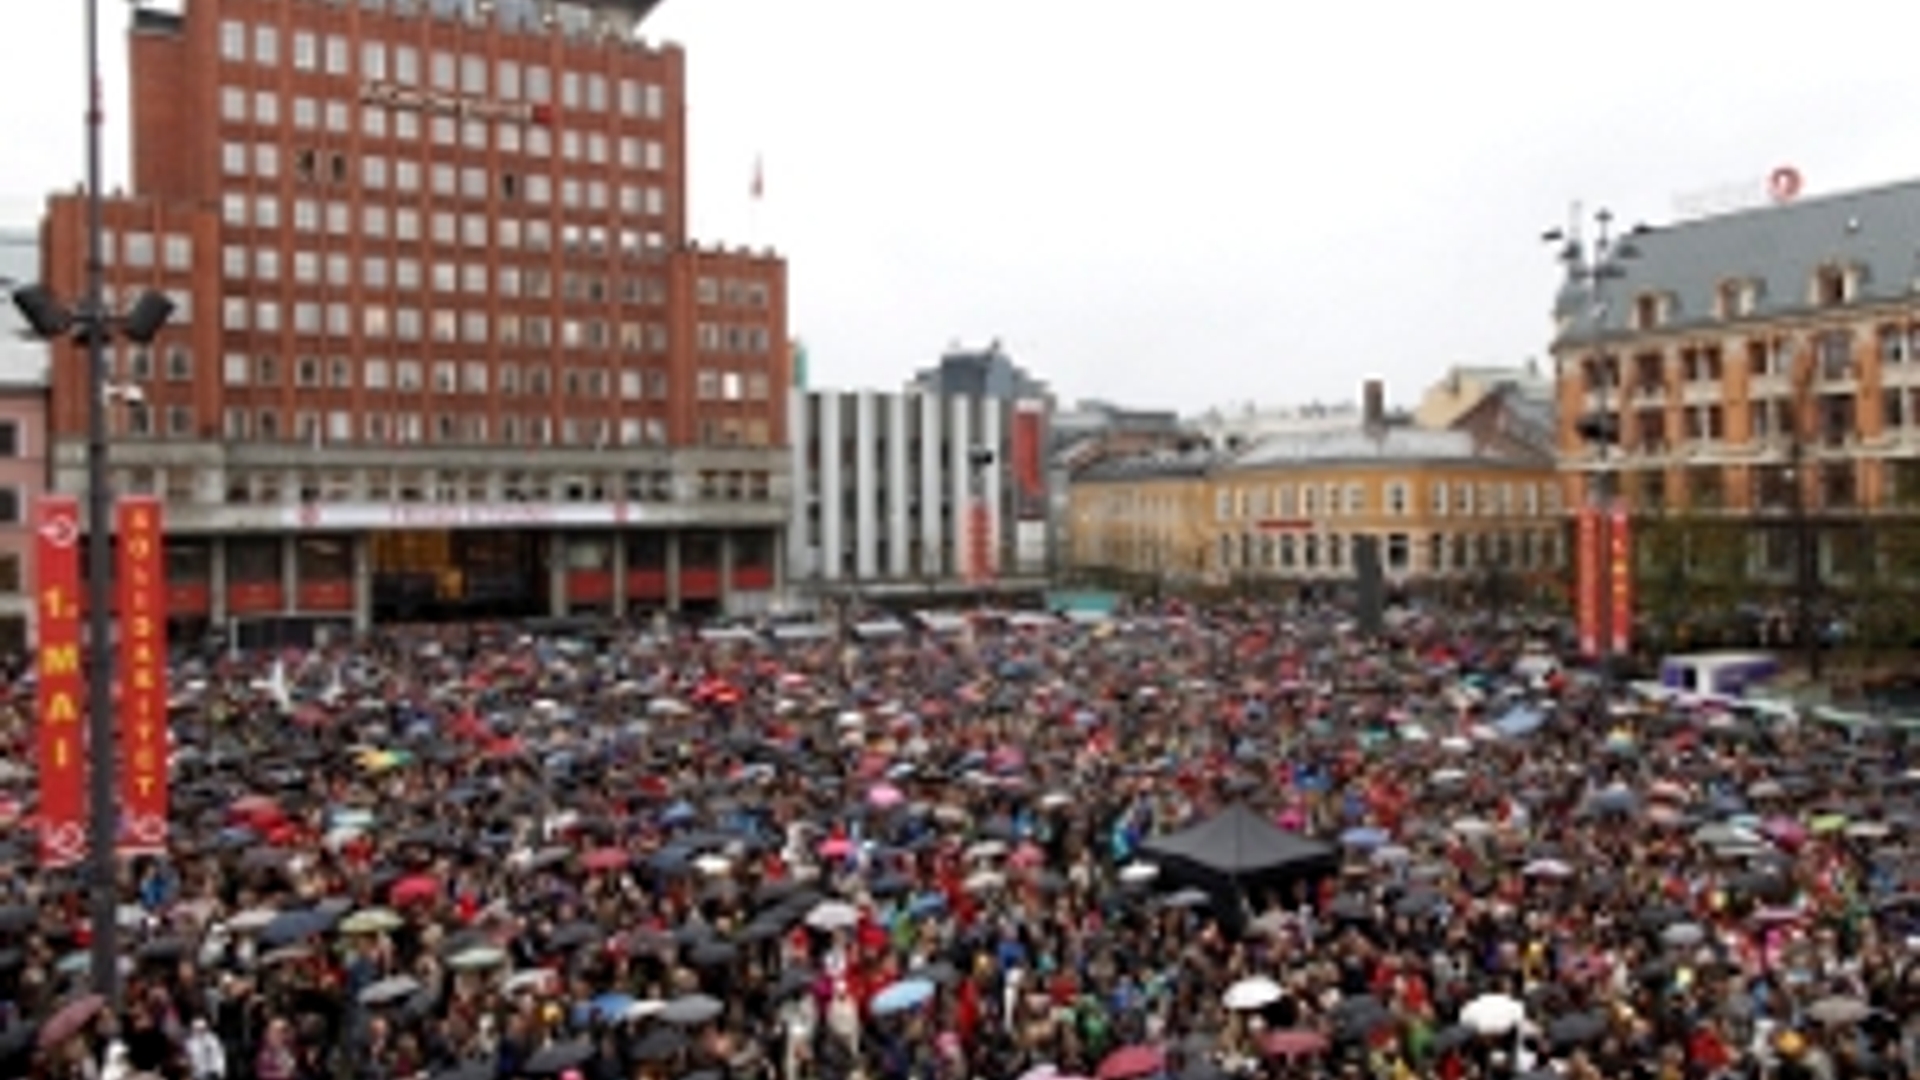 ANP-Noorwegen_protest_breivik300.jpg